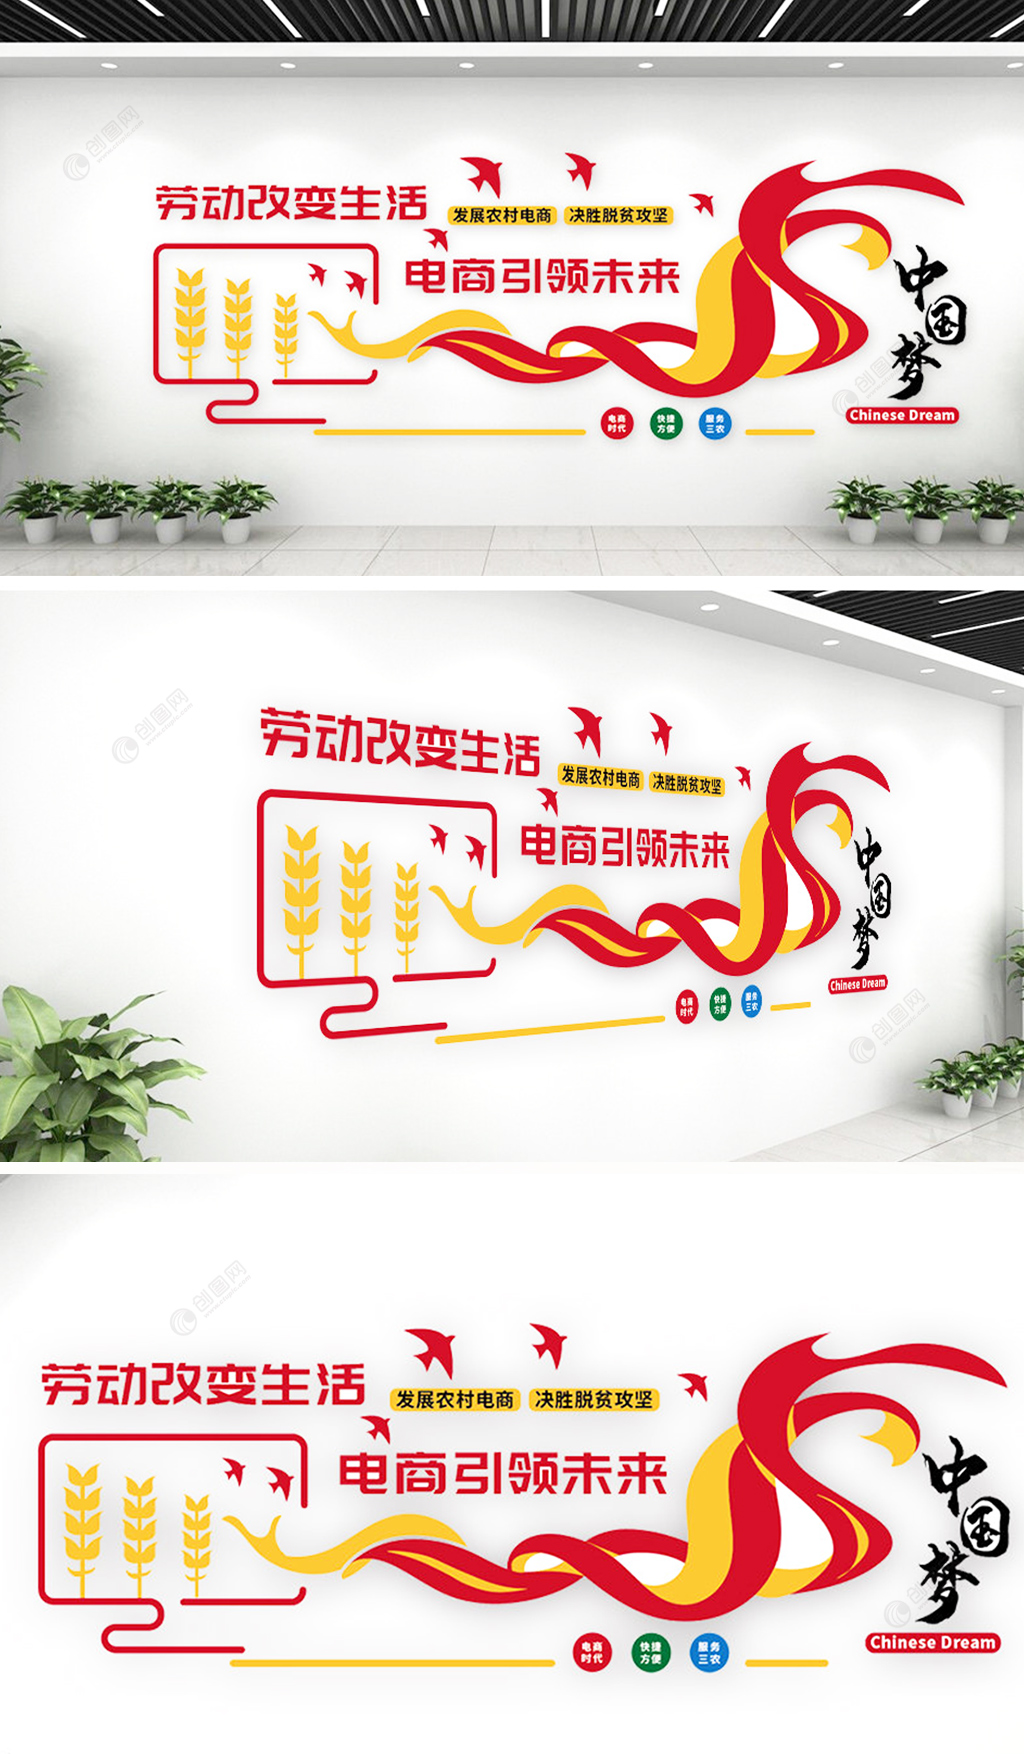 农村电商网络公司企业文化墙设计效果图